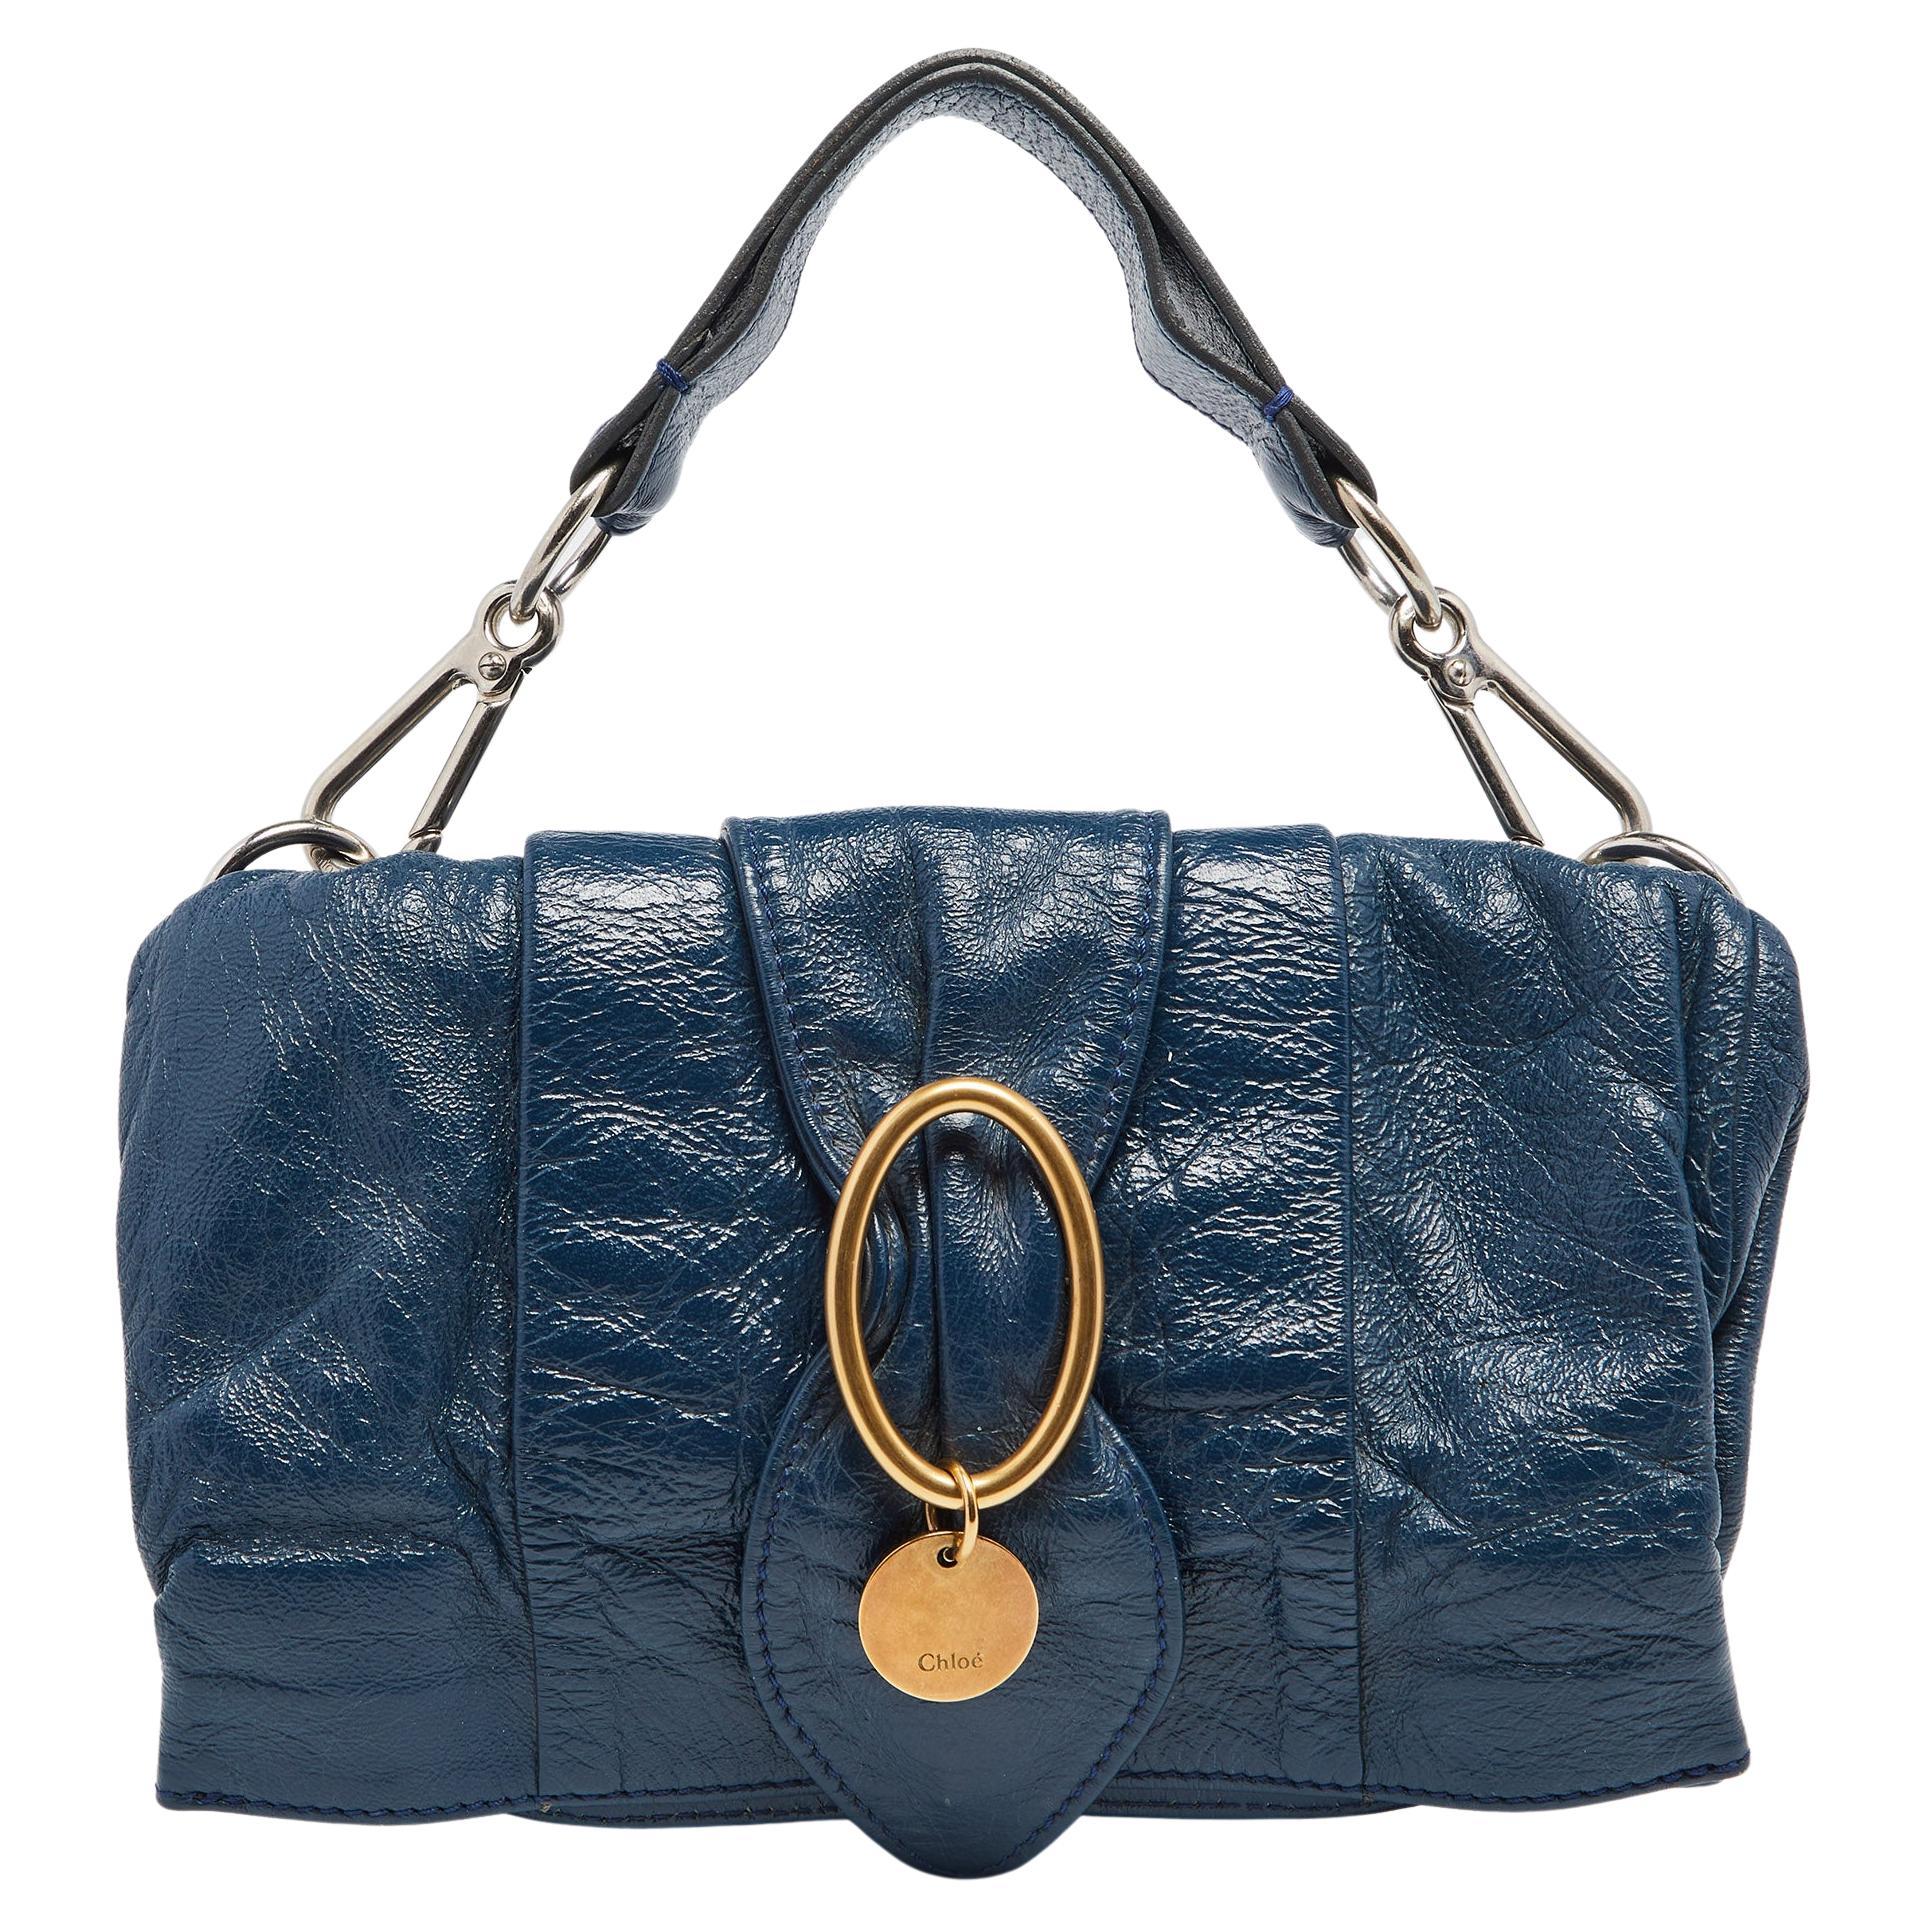 Chloe Navy Blue Leather Shoulder Bag